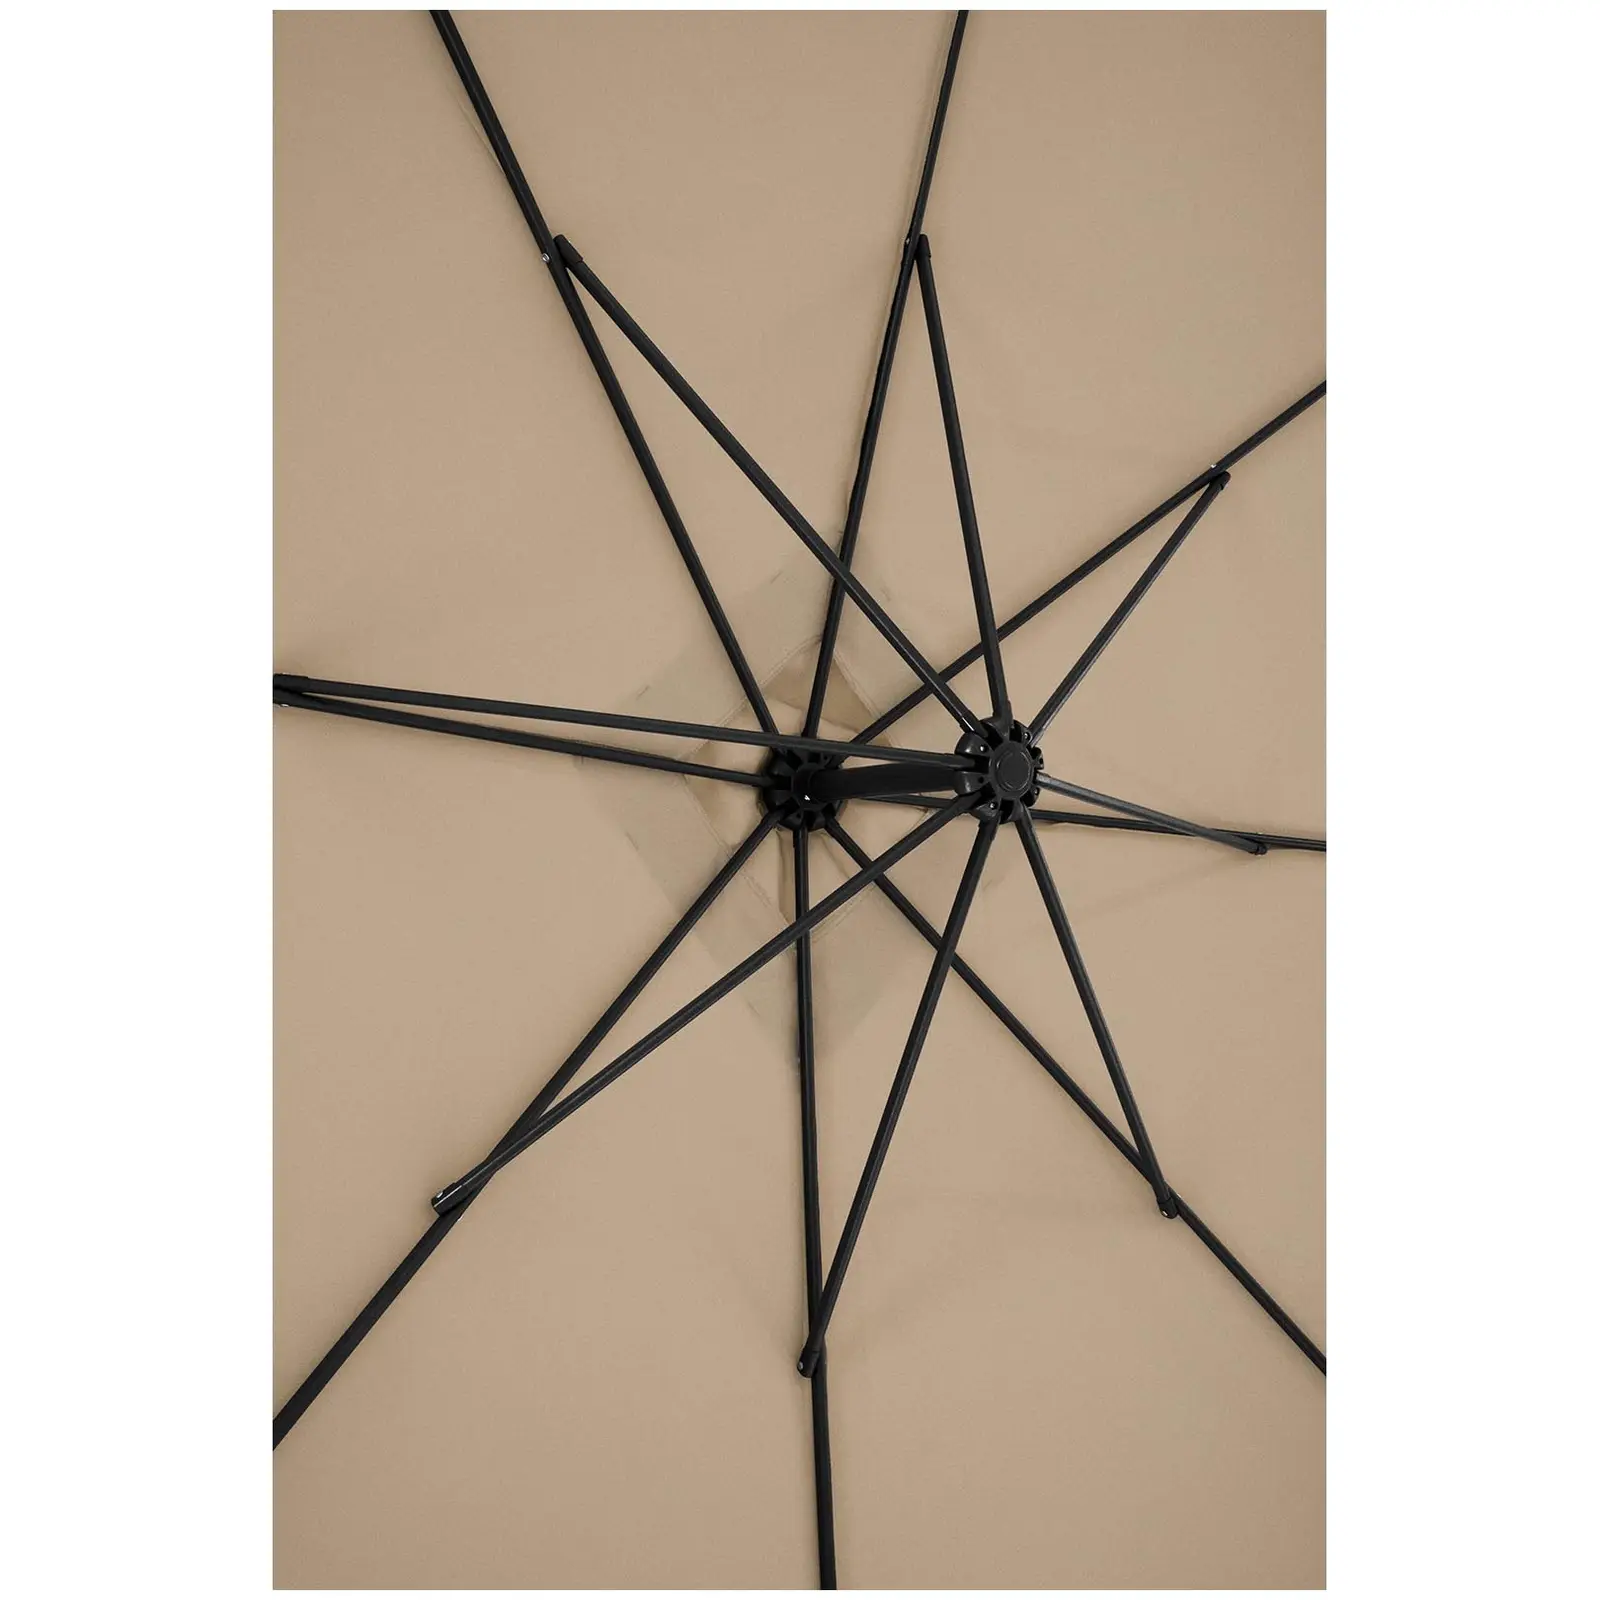 Ampelschirm - Taupe - viereckig - 250 x 250 cm - neigbar